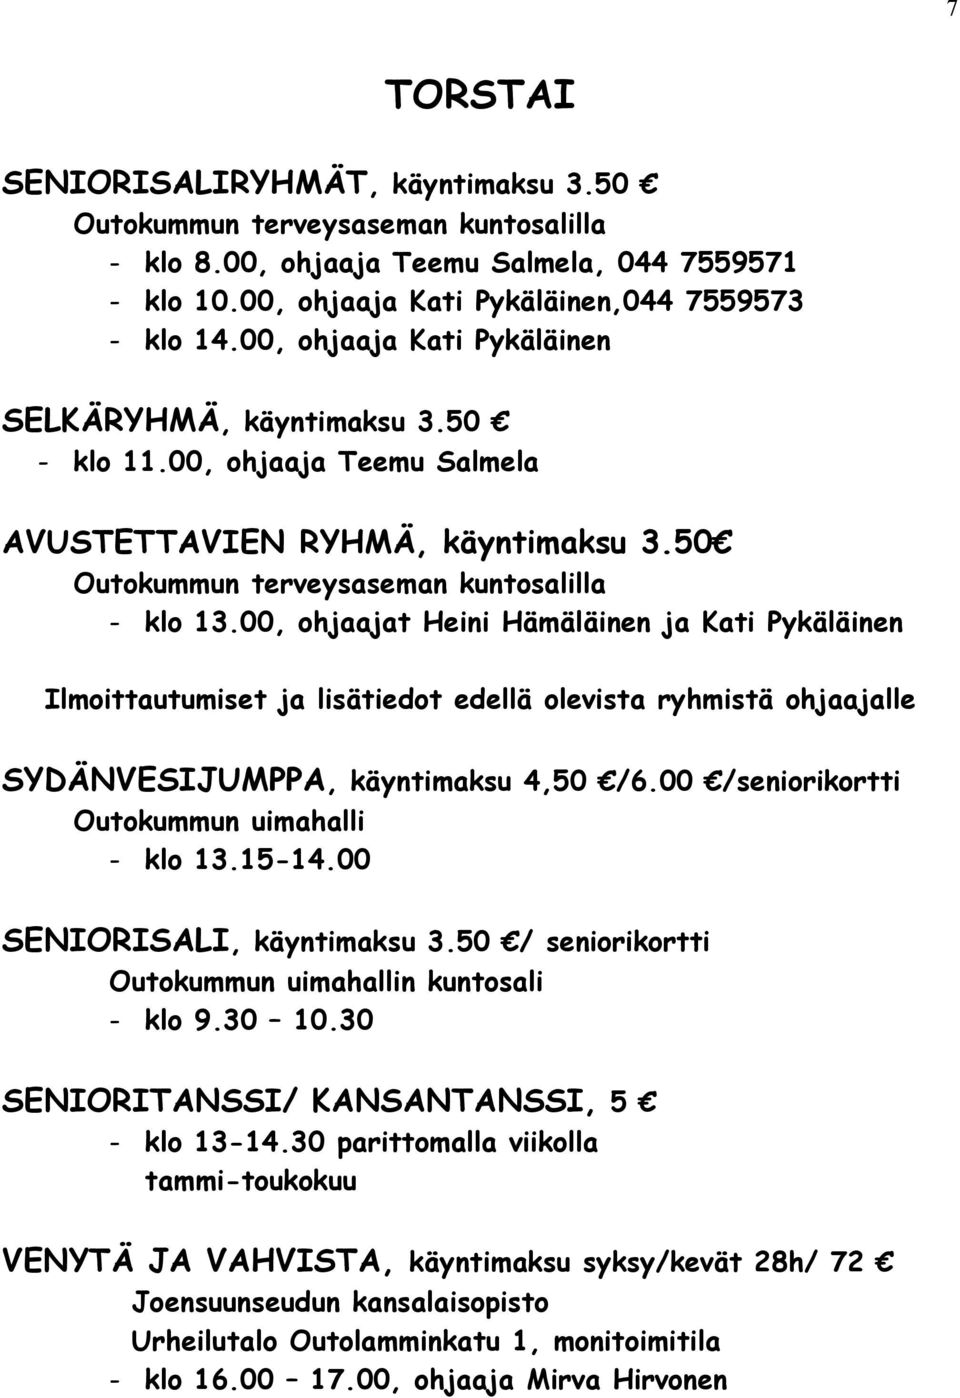 00, ohjaajat Heini Hämäläinen ja Kati Pykäläinen Ilmoittautumiset ja lisätiedot edellä olevista ryhmistä ohjaajalle SYDÄNVESIJUMPPA, käyntimaksu 4,50 0 /seniorikortti - klo 13.15-14.